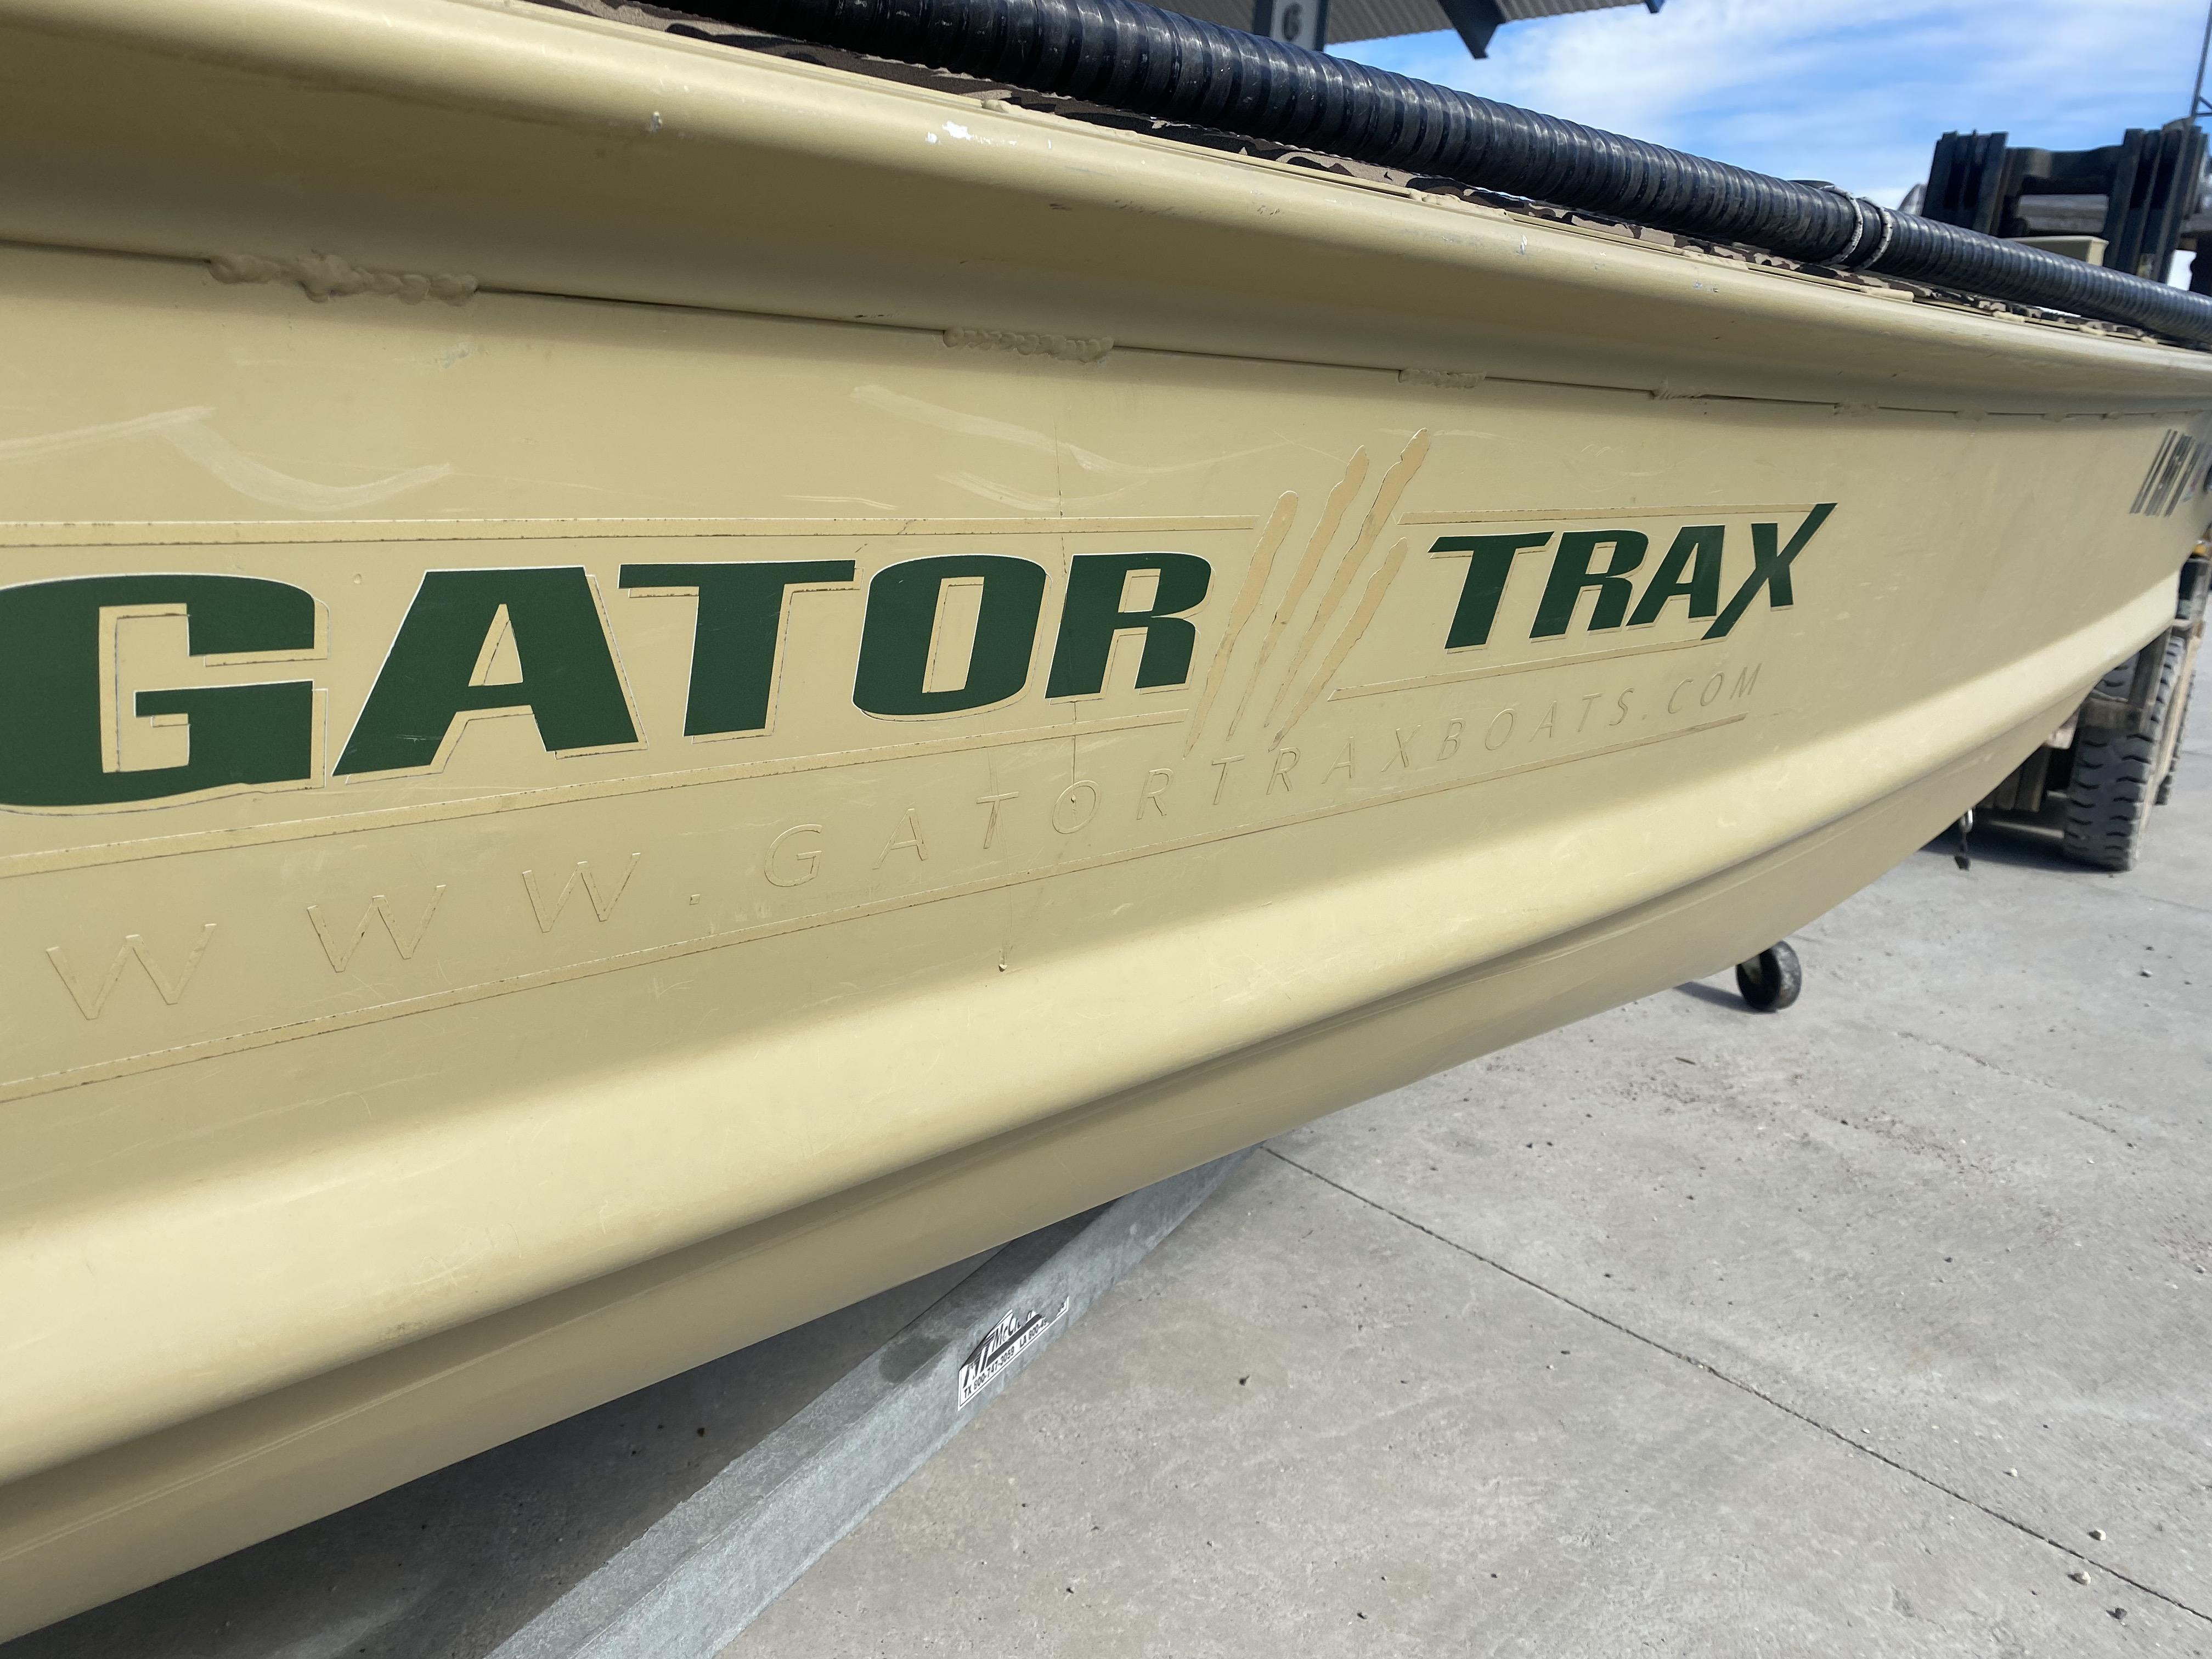 Sight - Gator Trax Boats: Louisiana Custom Aluminum Boats